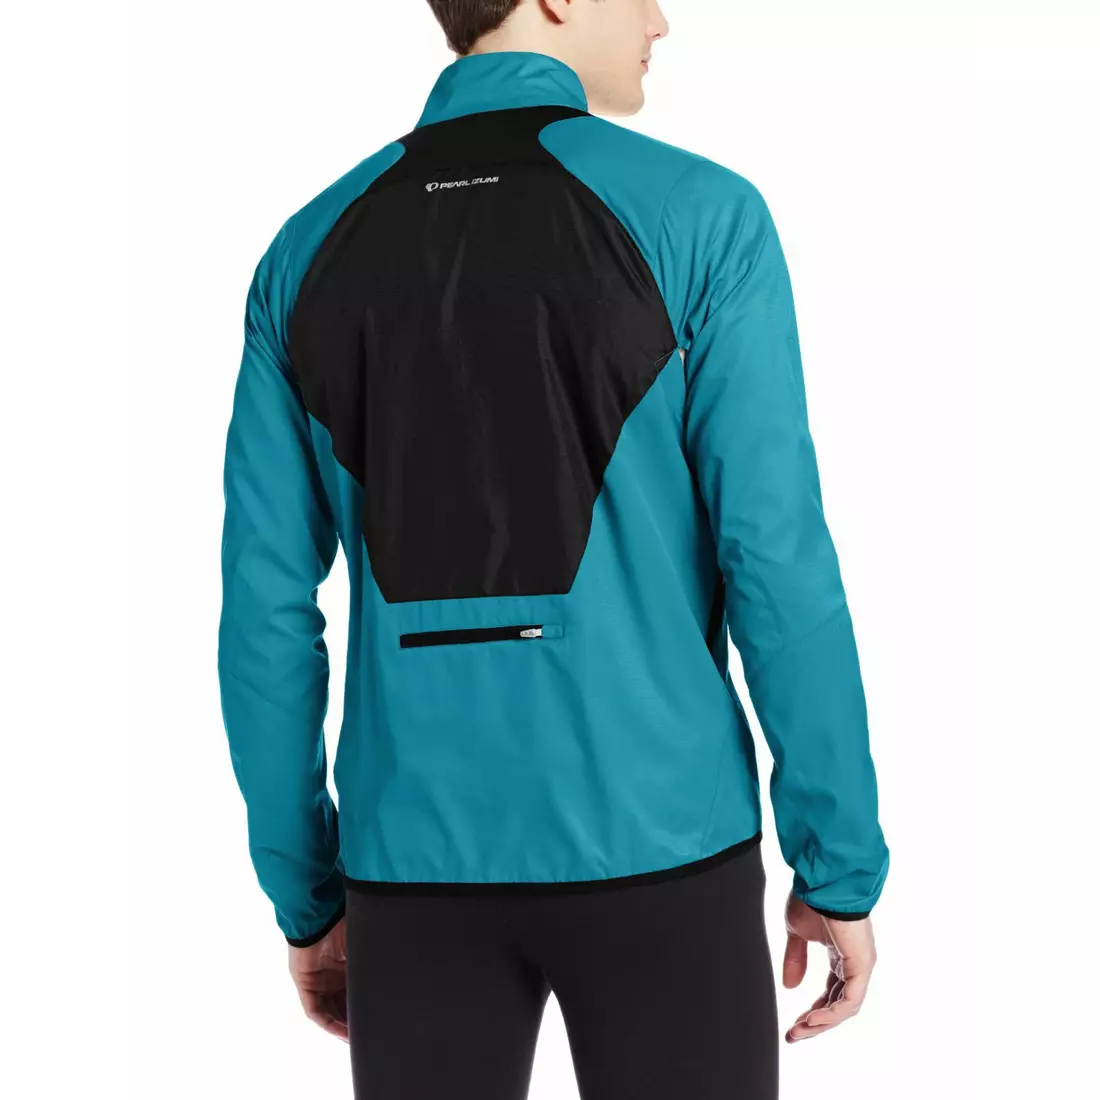 PEARL IZUMI FLY 12131402-4DI - jachetă alergare bărbați, culoare: albastru